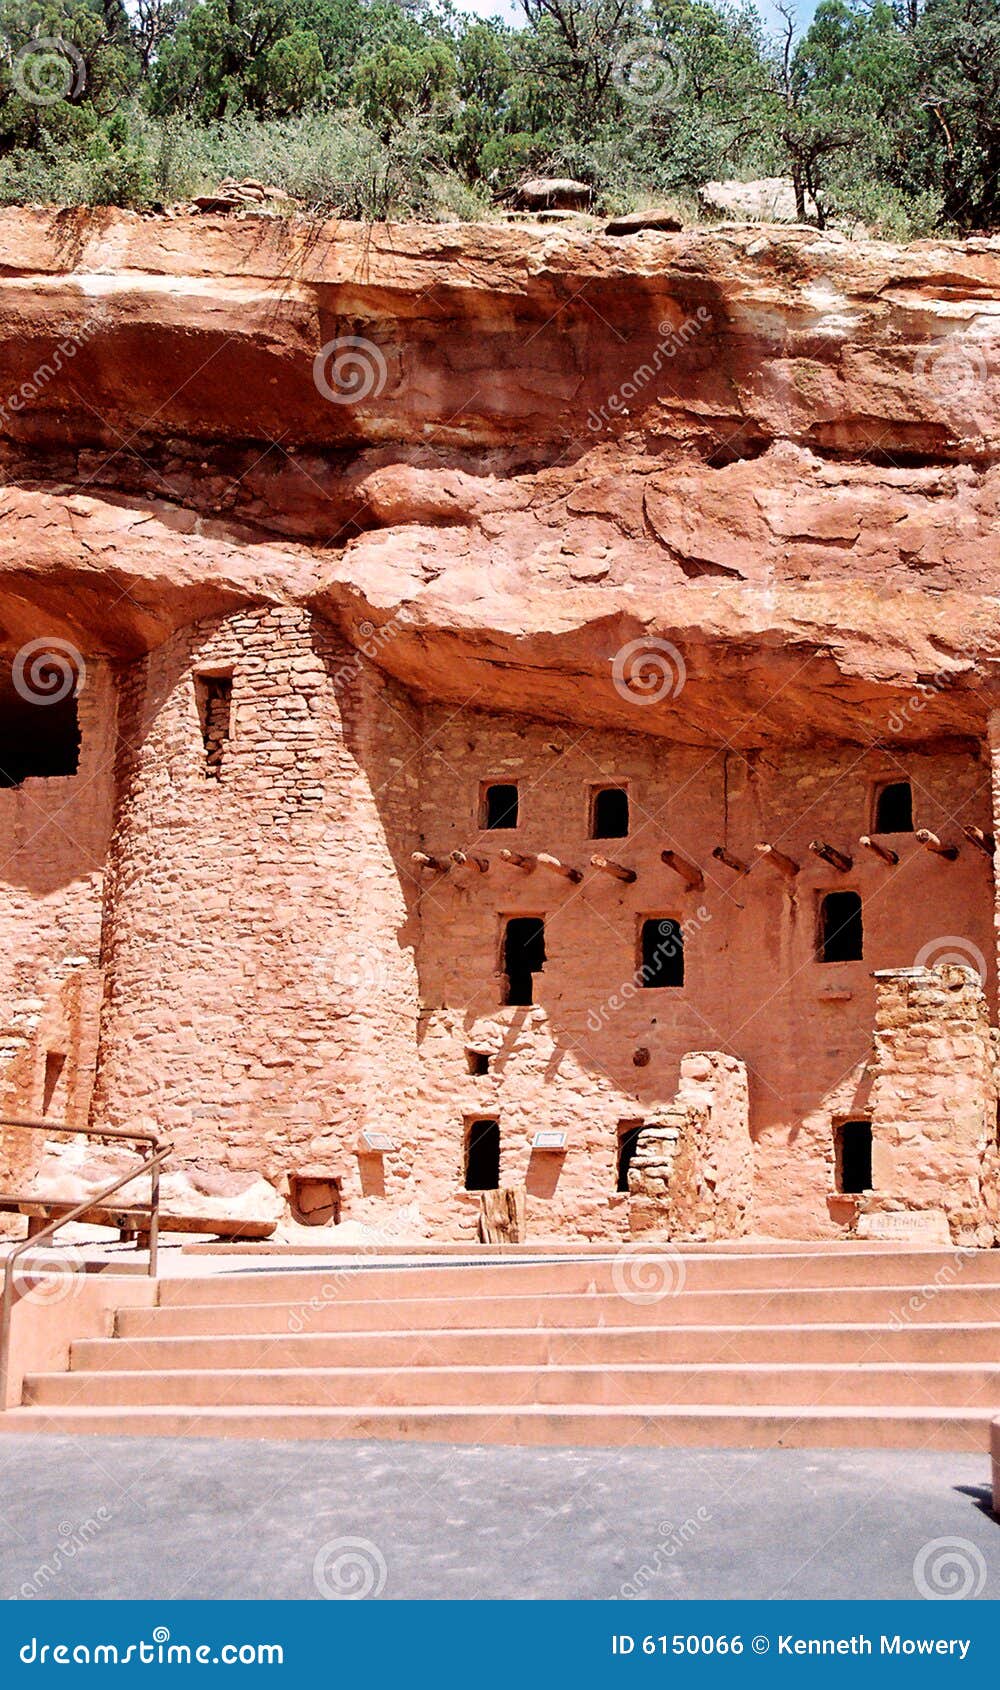 ancient anazasi dwellings